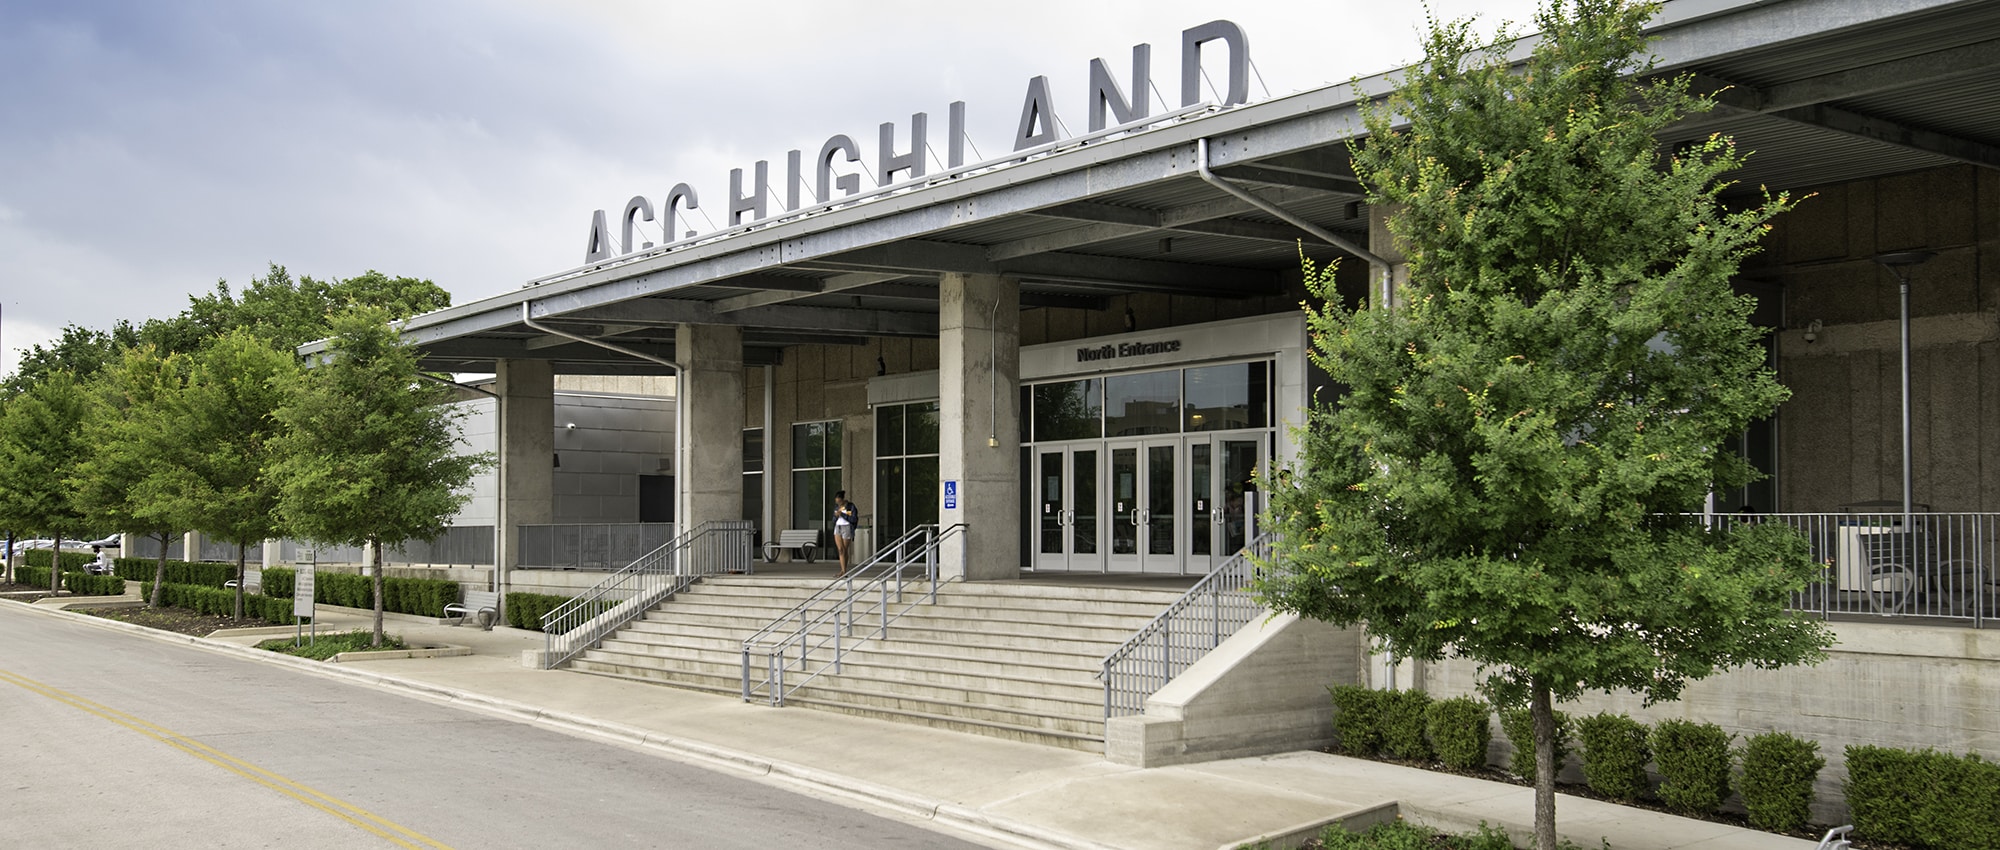 ACC Highland Redevelopment in Austin, TX